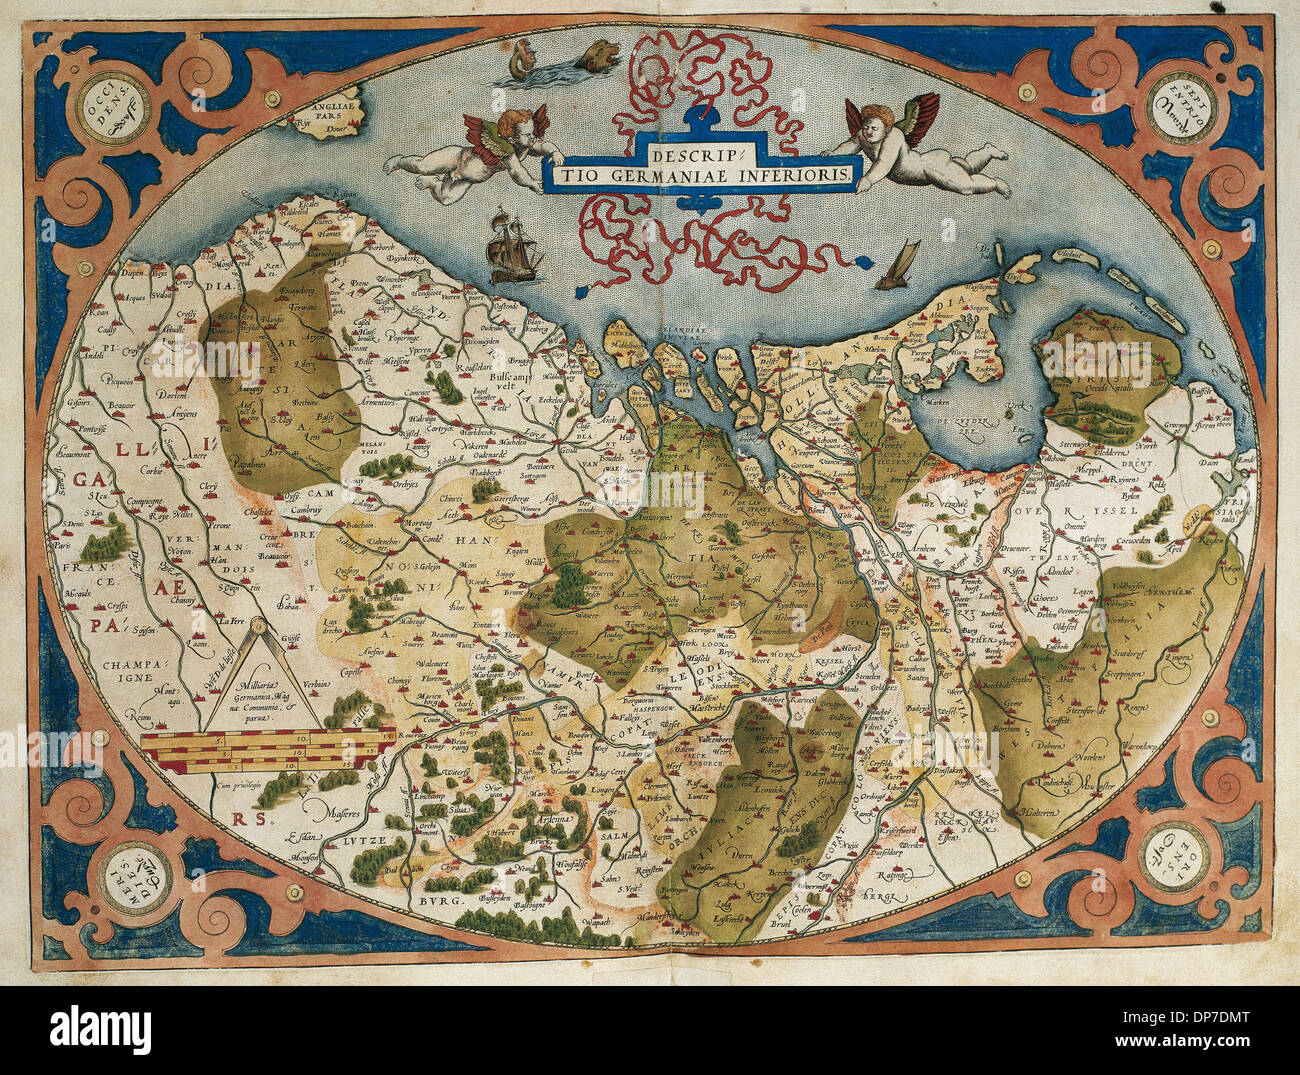 Karte von Deutschland und aktuelle Niederlande. Theatrum Orbis Terrarum von Abraham Ortelius (1527-1598). Erste Ausgabe. Antwerpen, 1574. Stockfoto